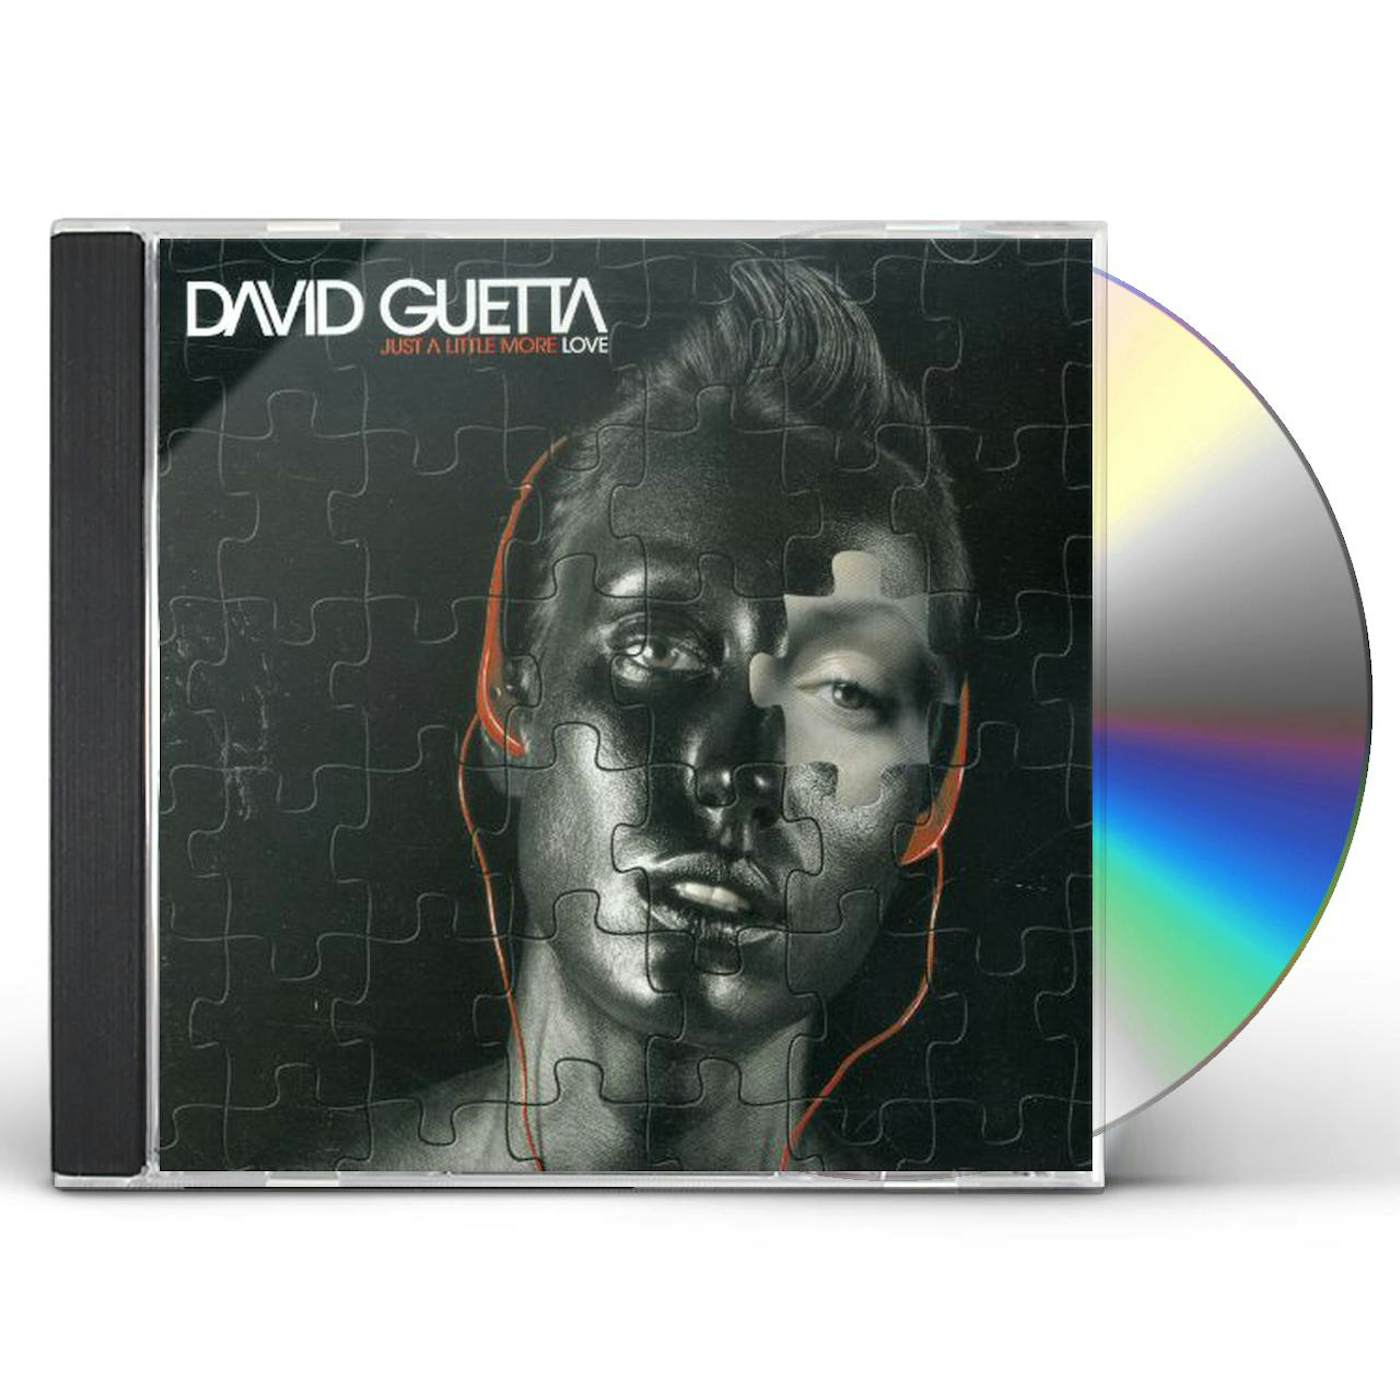 David Guetta JUST A LITTLE MORE LOVE CD